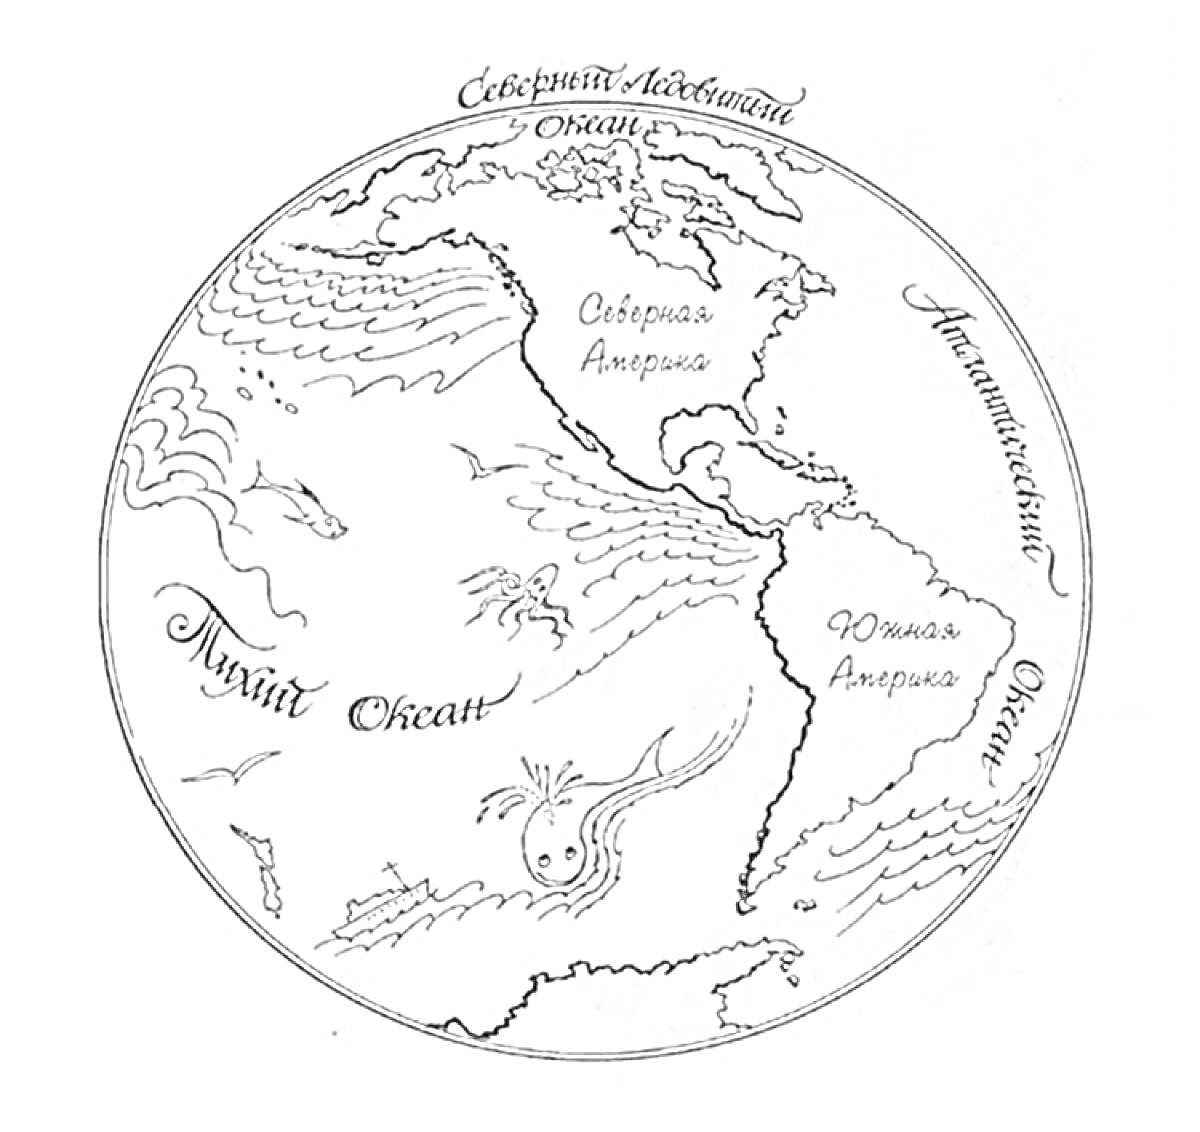 Карта мира с изображением Северного и Южного полушарий, с подписанными материками Северная и Южная Америка, а также океанами Северный Ледовитый океан, Атлантический океан и Тихий океан, водными существами и морскими волнами.